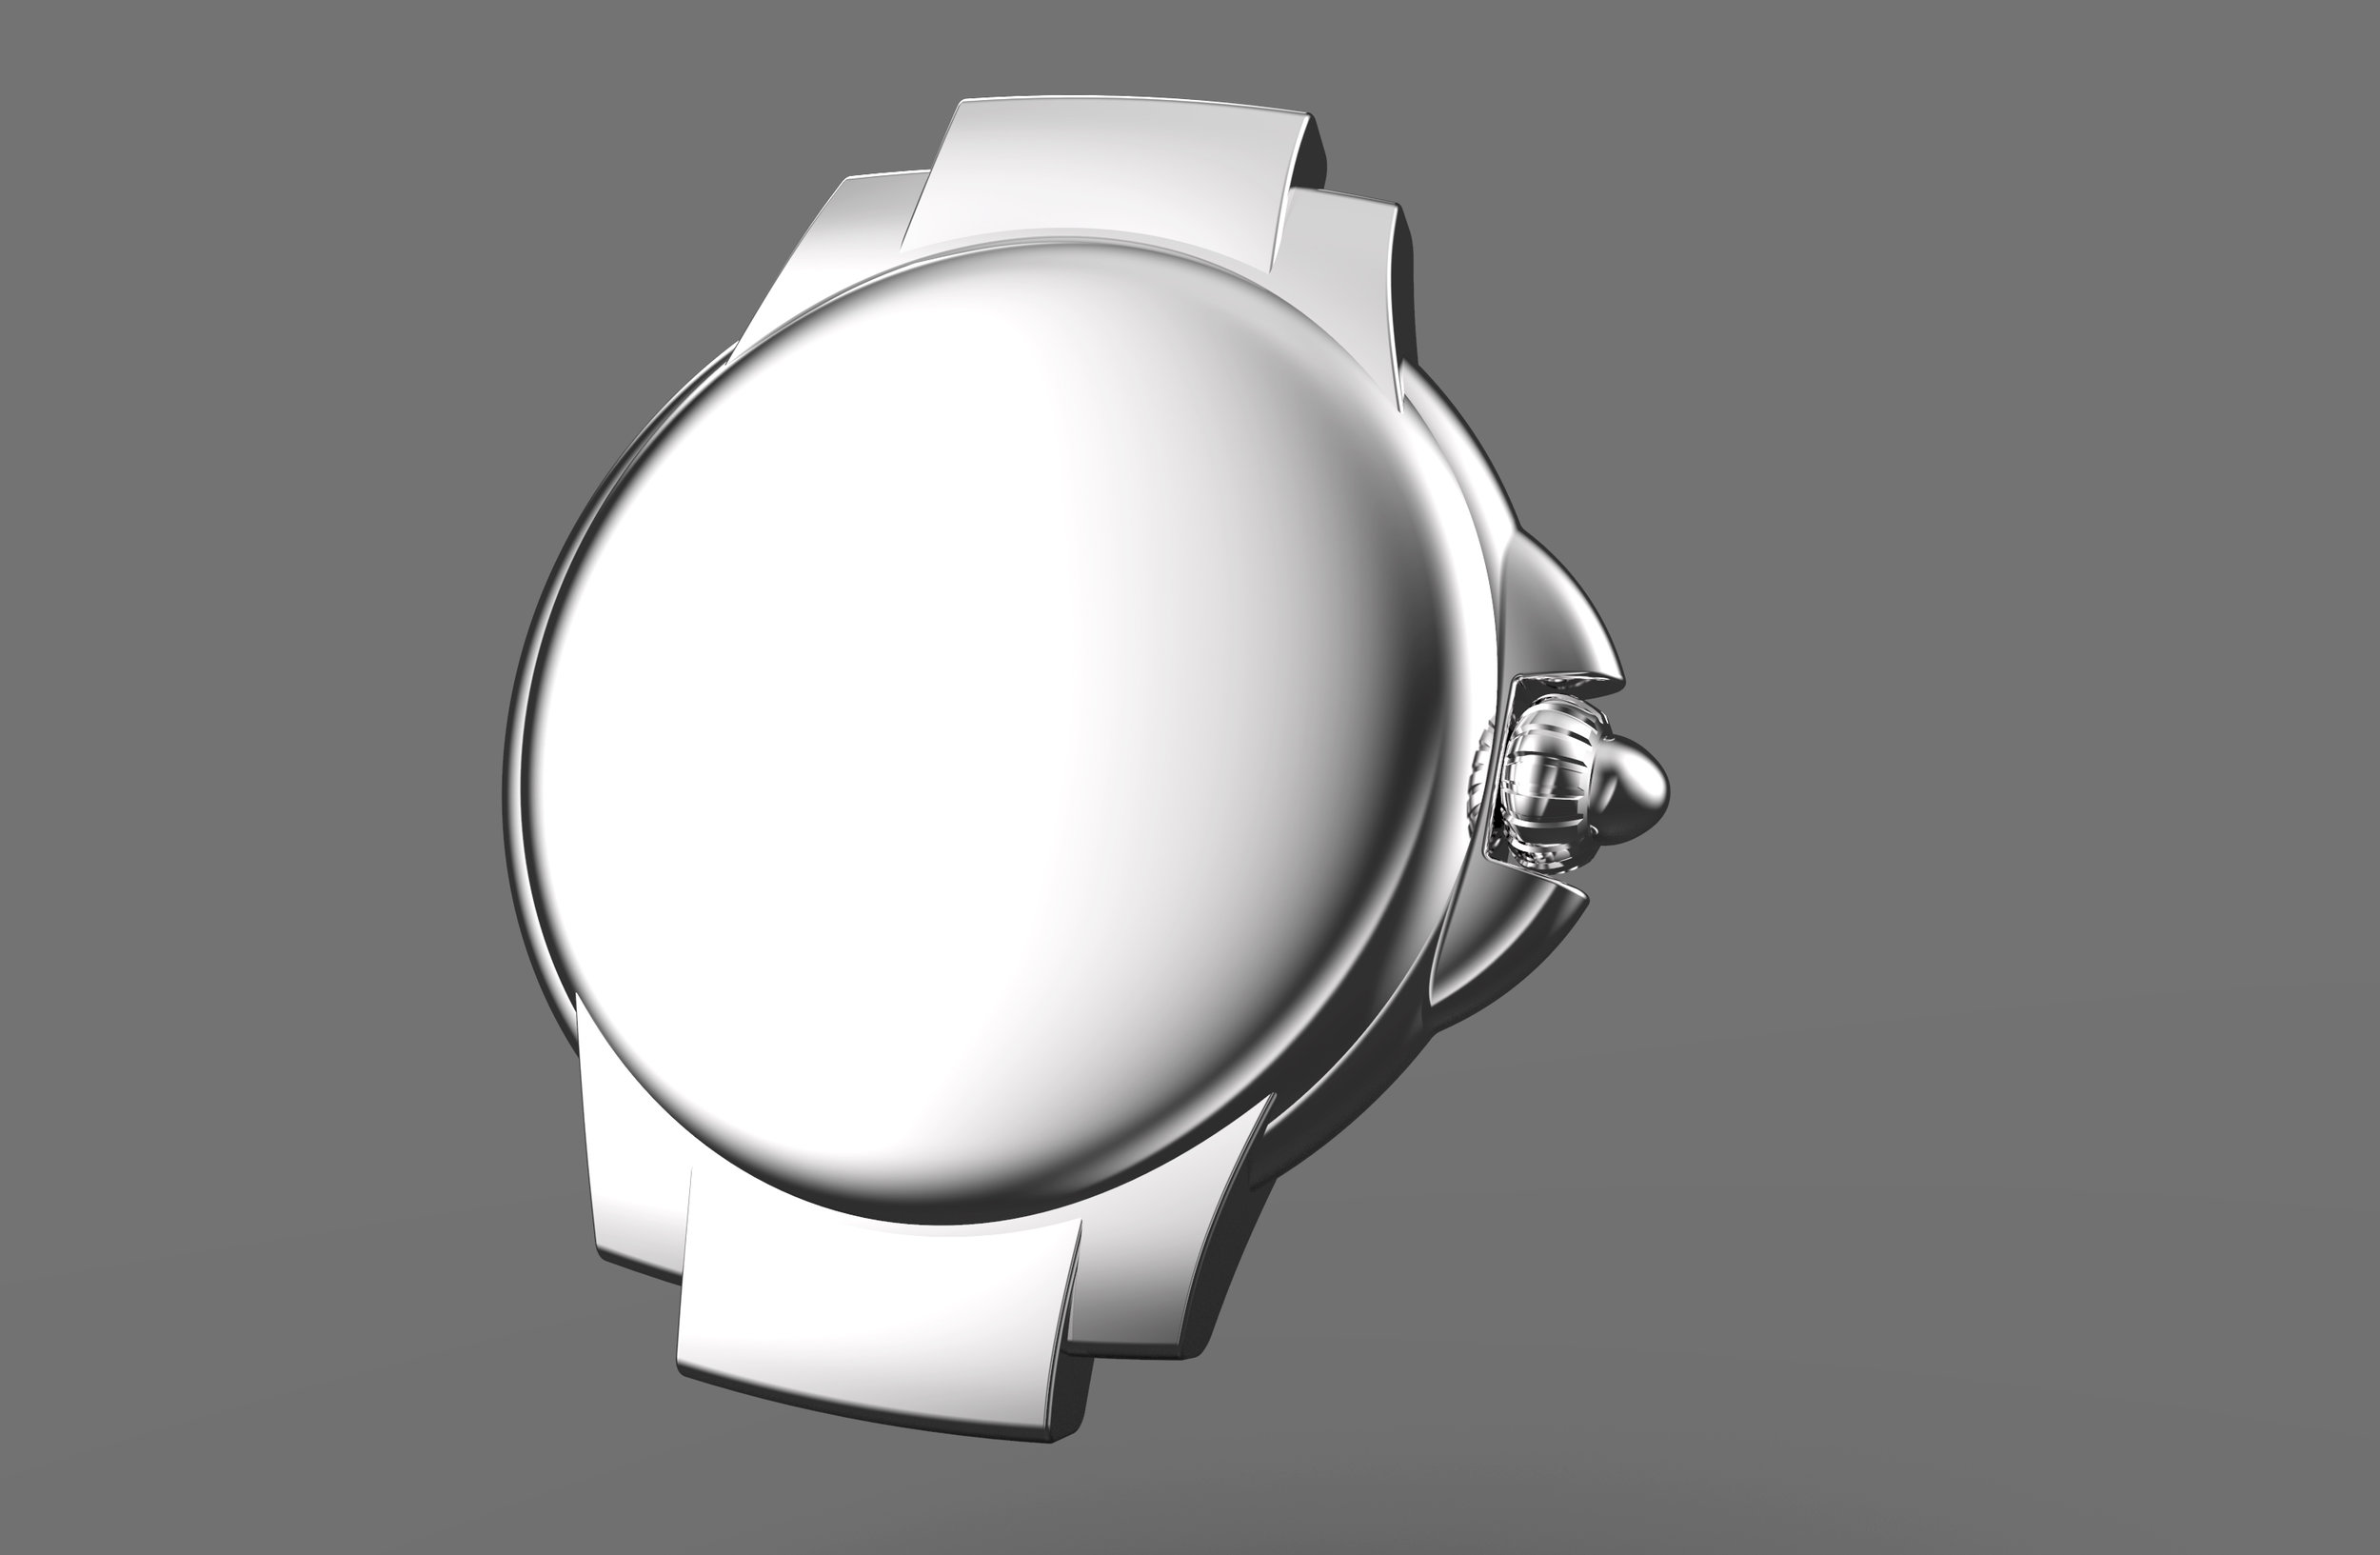 cartier watch design